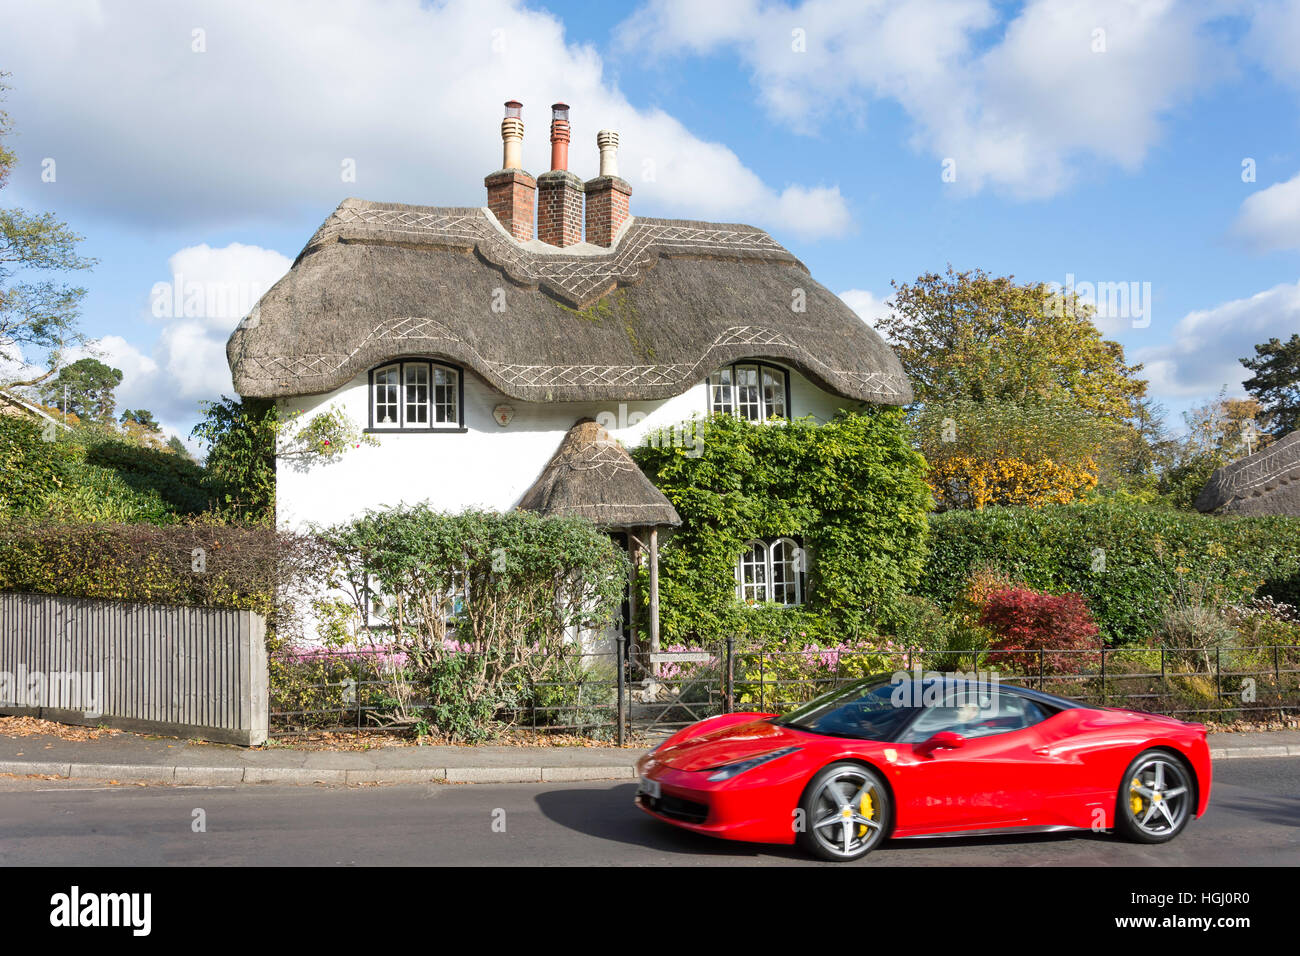 Voiture de sport Ferrari passant chaumière à Swan Green, Lyndhurst, Hampshire, Angleterre, Royaume-Uni Banque D'Images